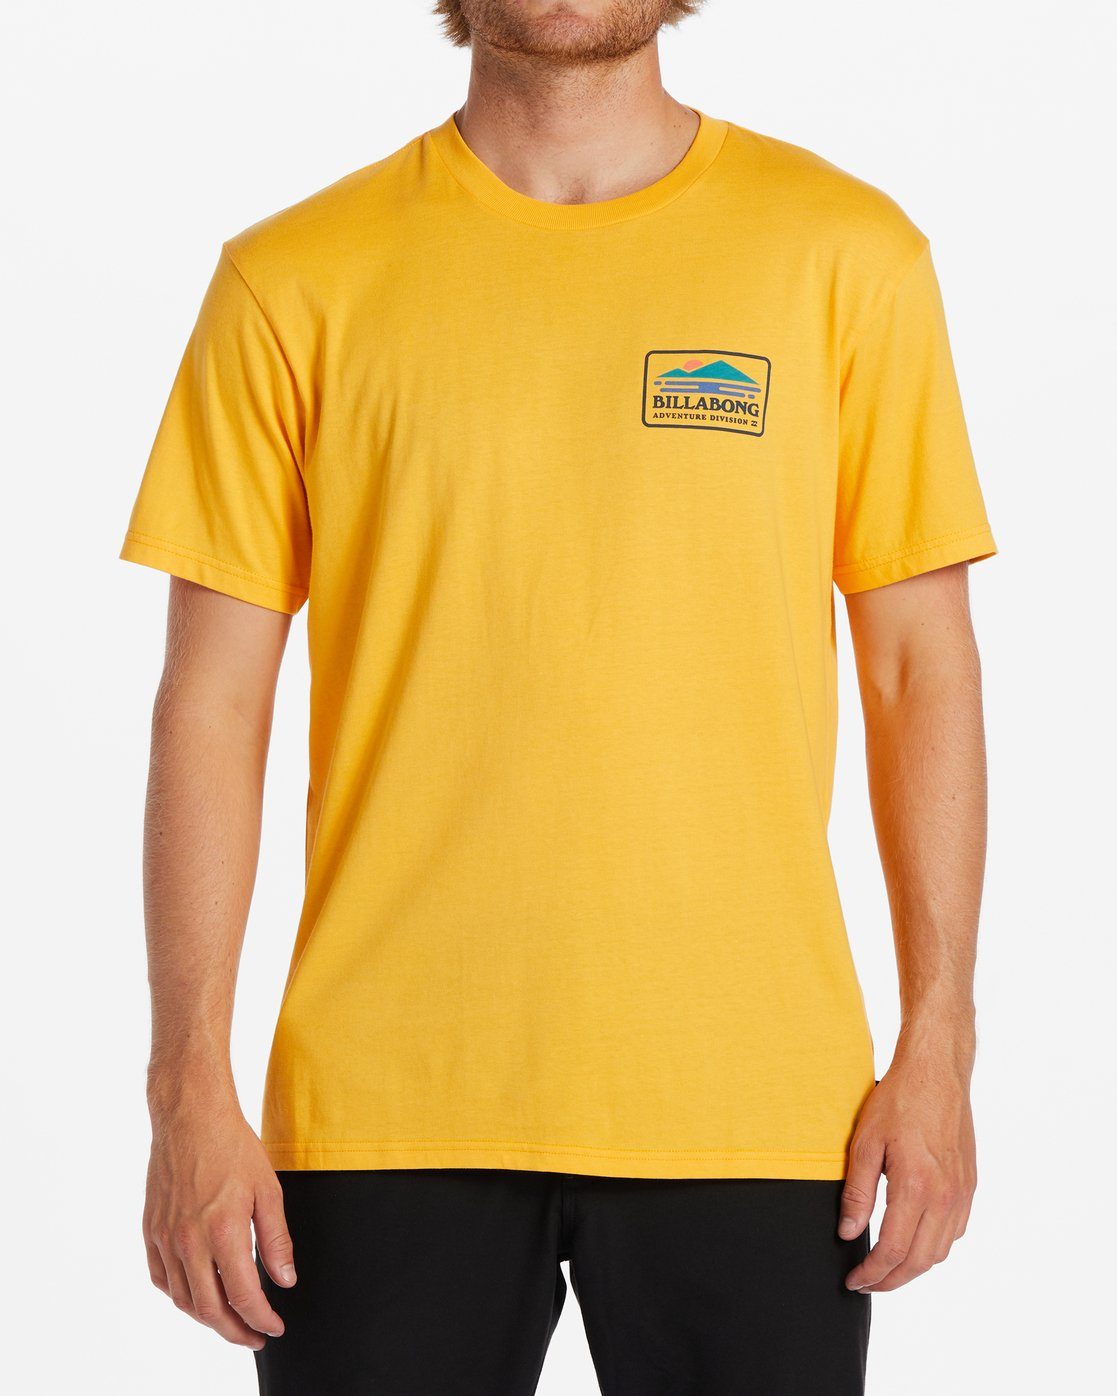 Print-Shirt Range - T-Shirt Billabong für Männer